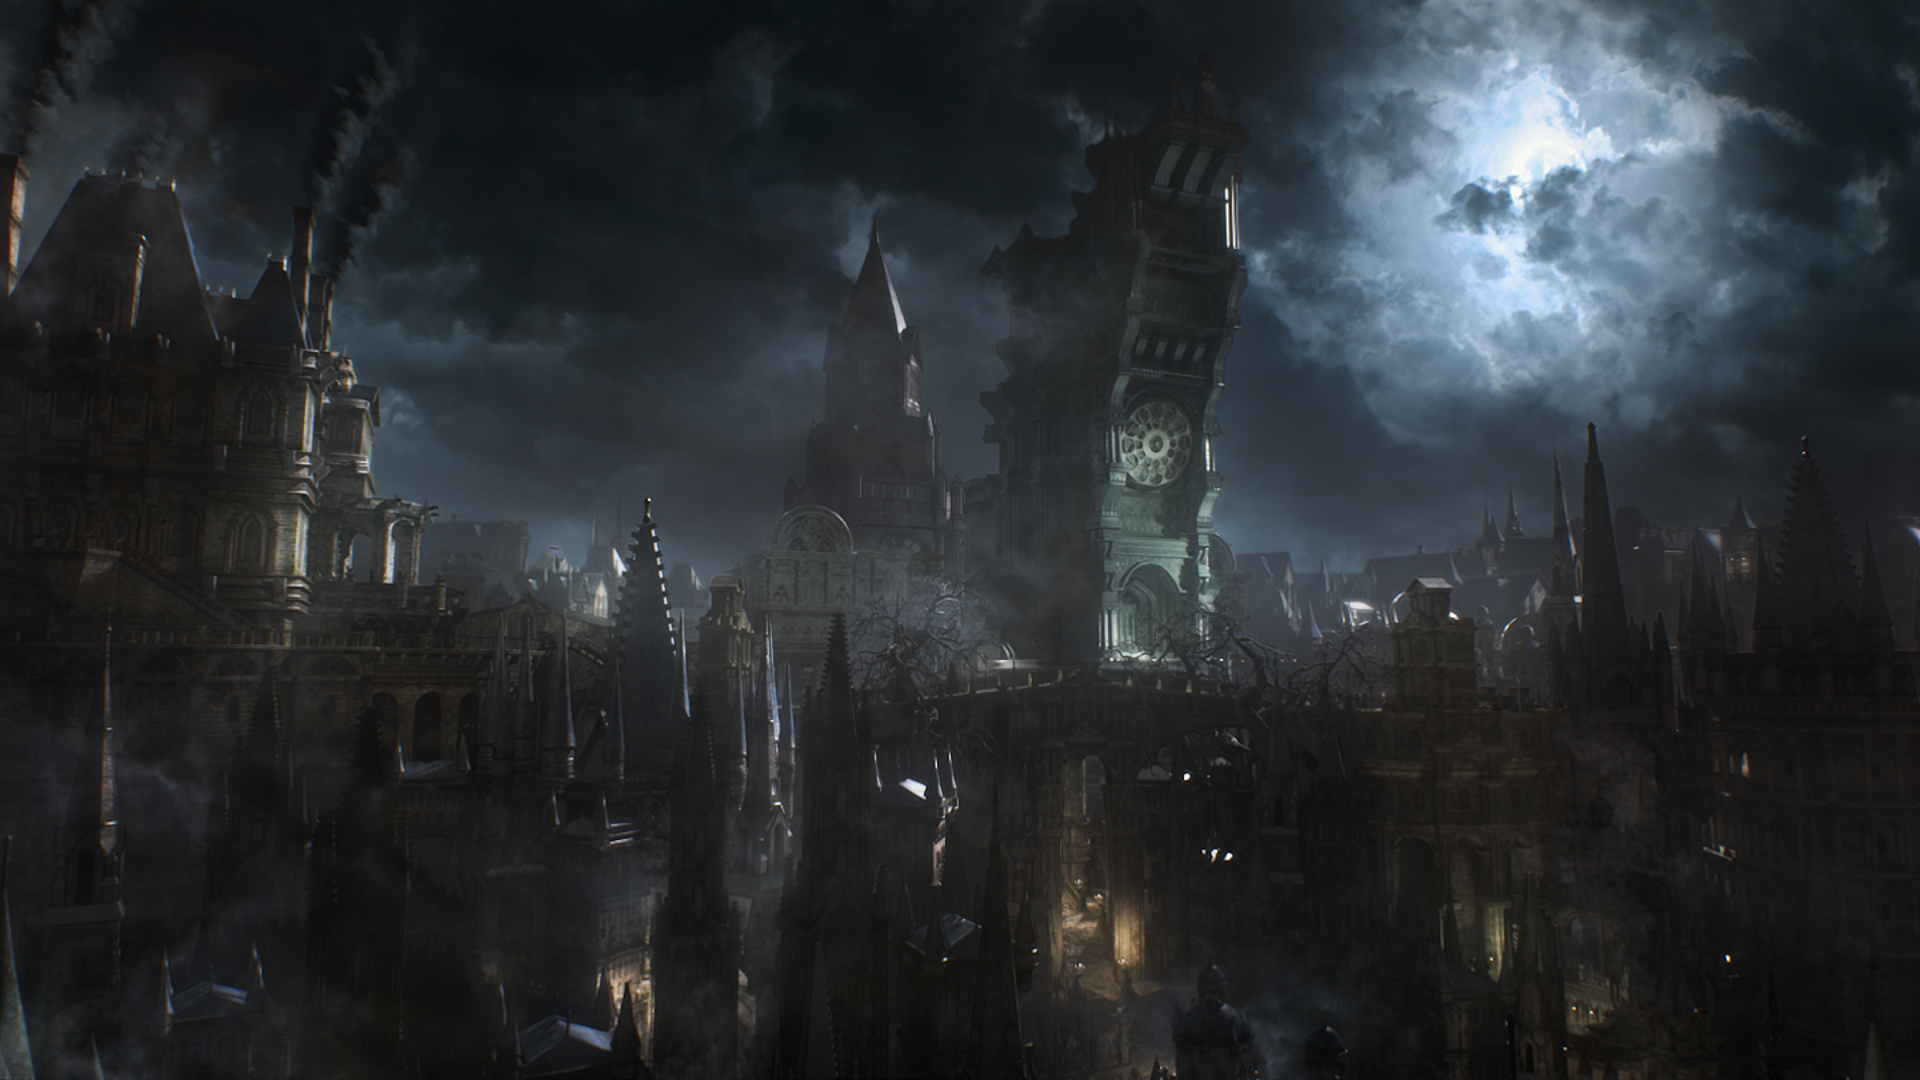 Free Images video game, bloodborne, dark Gothic